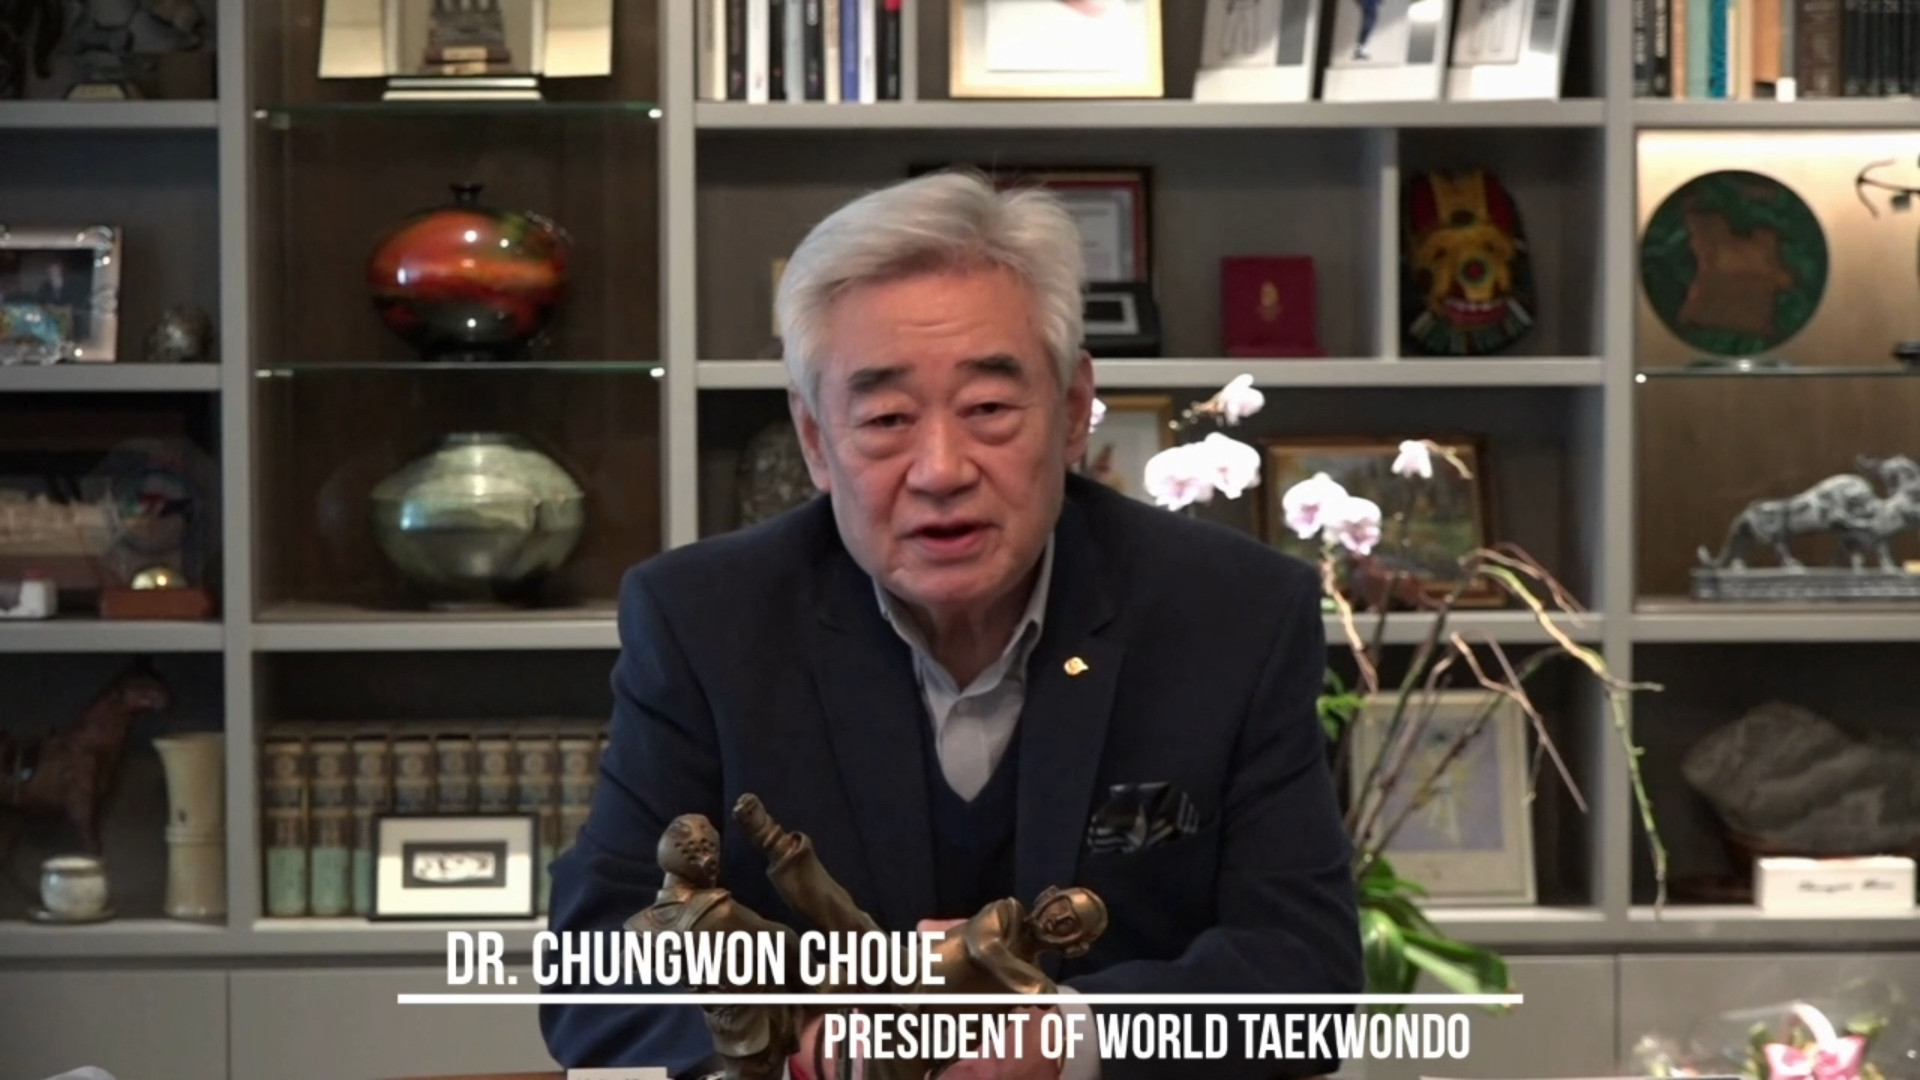 World Taekwondo President Chungwon Choue led the speakers at the Gender Equity and Women Leadership Forum ©World Taekwondo